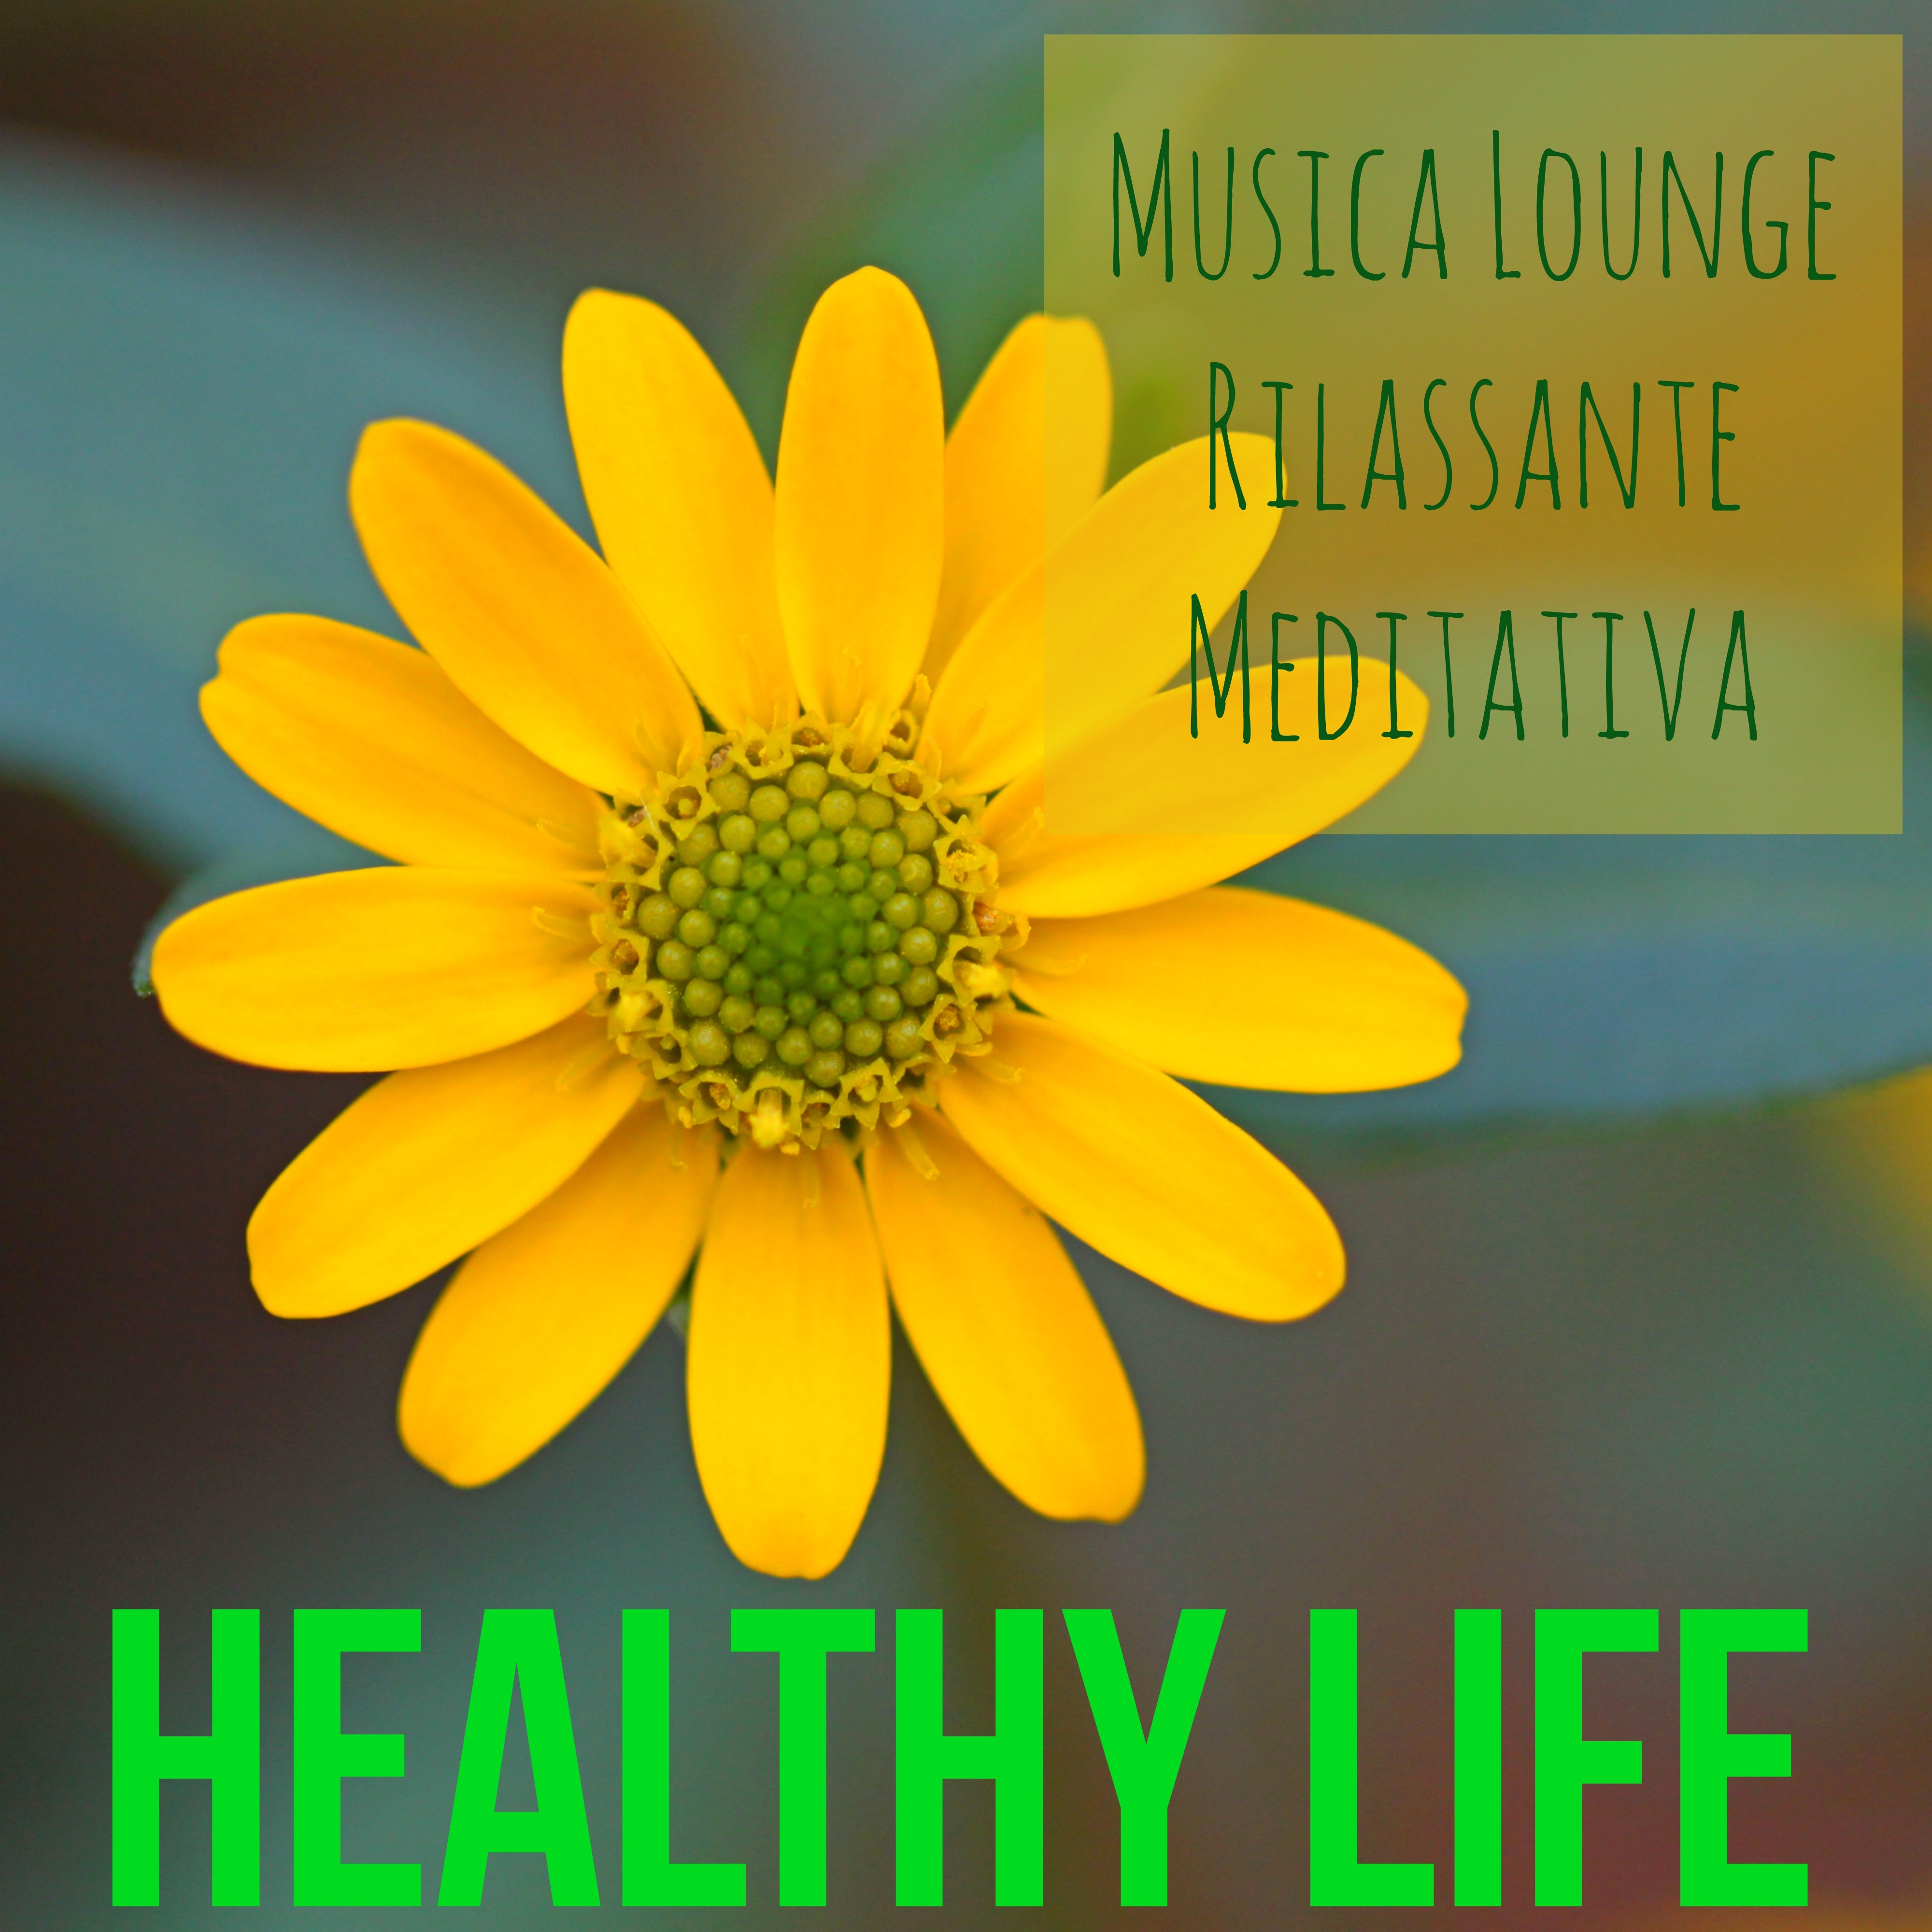 Healthy Life - Musica Lounge Rilassante Meditativa per Yoga Massaggio Ayurvedico con Suoni dalla Natura New Age